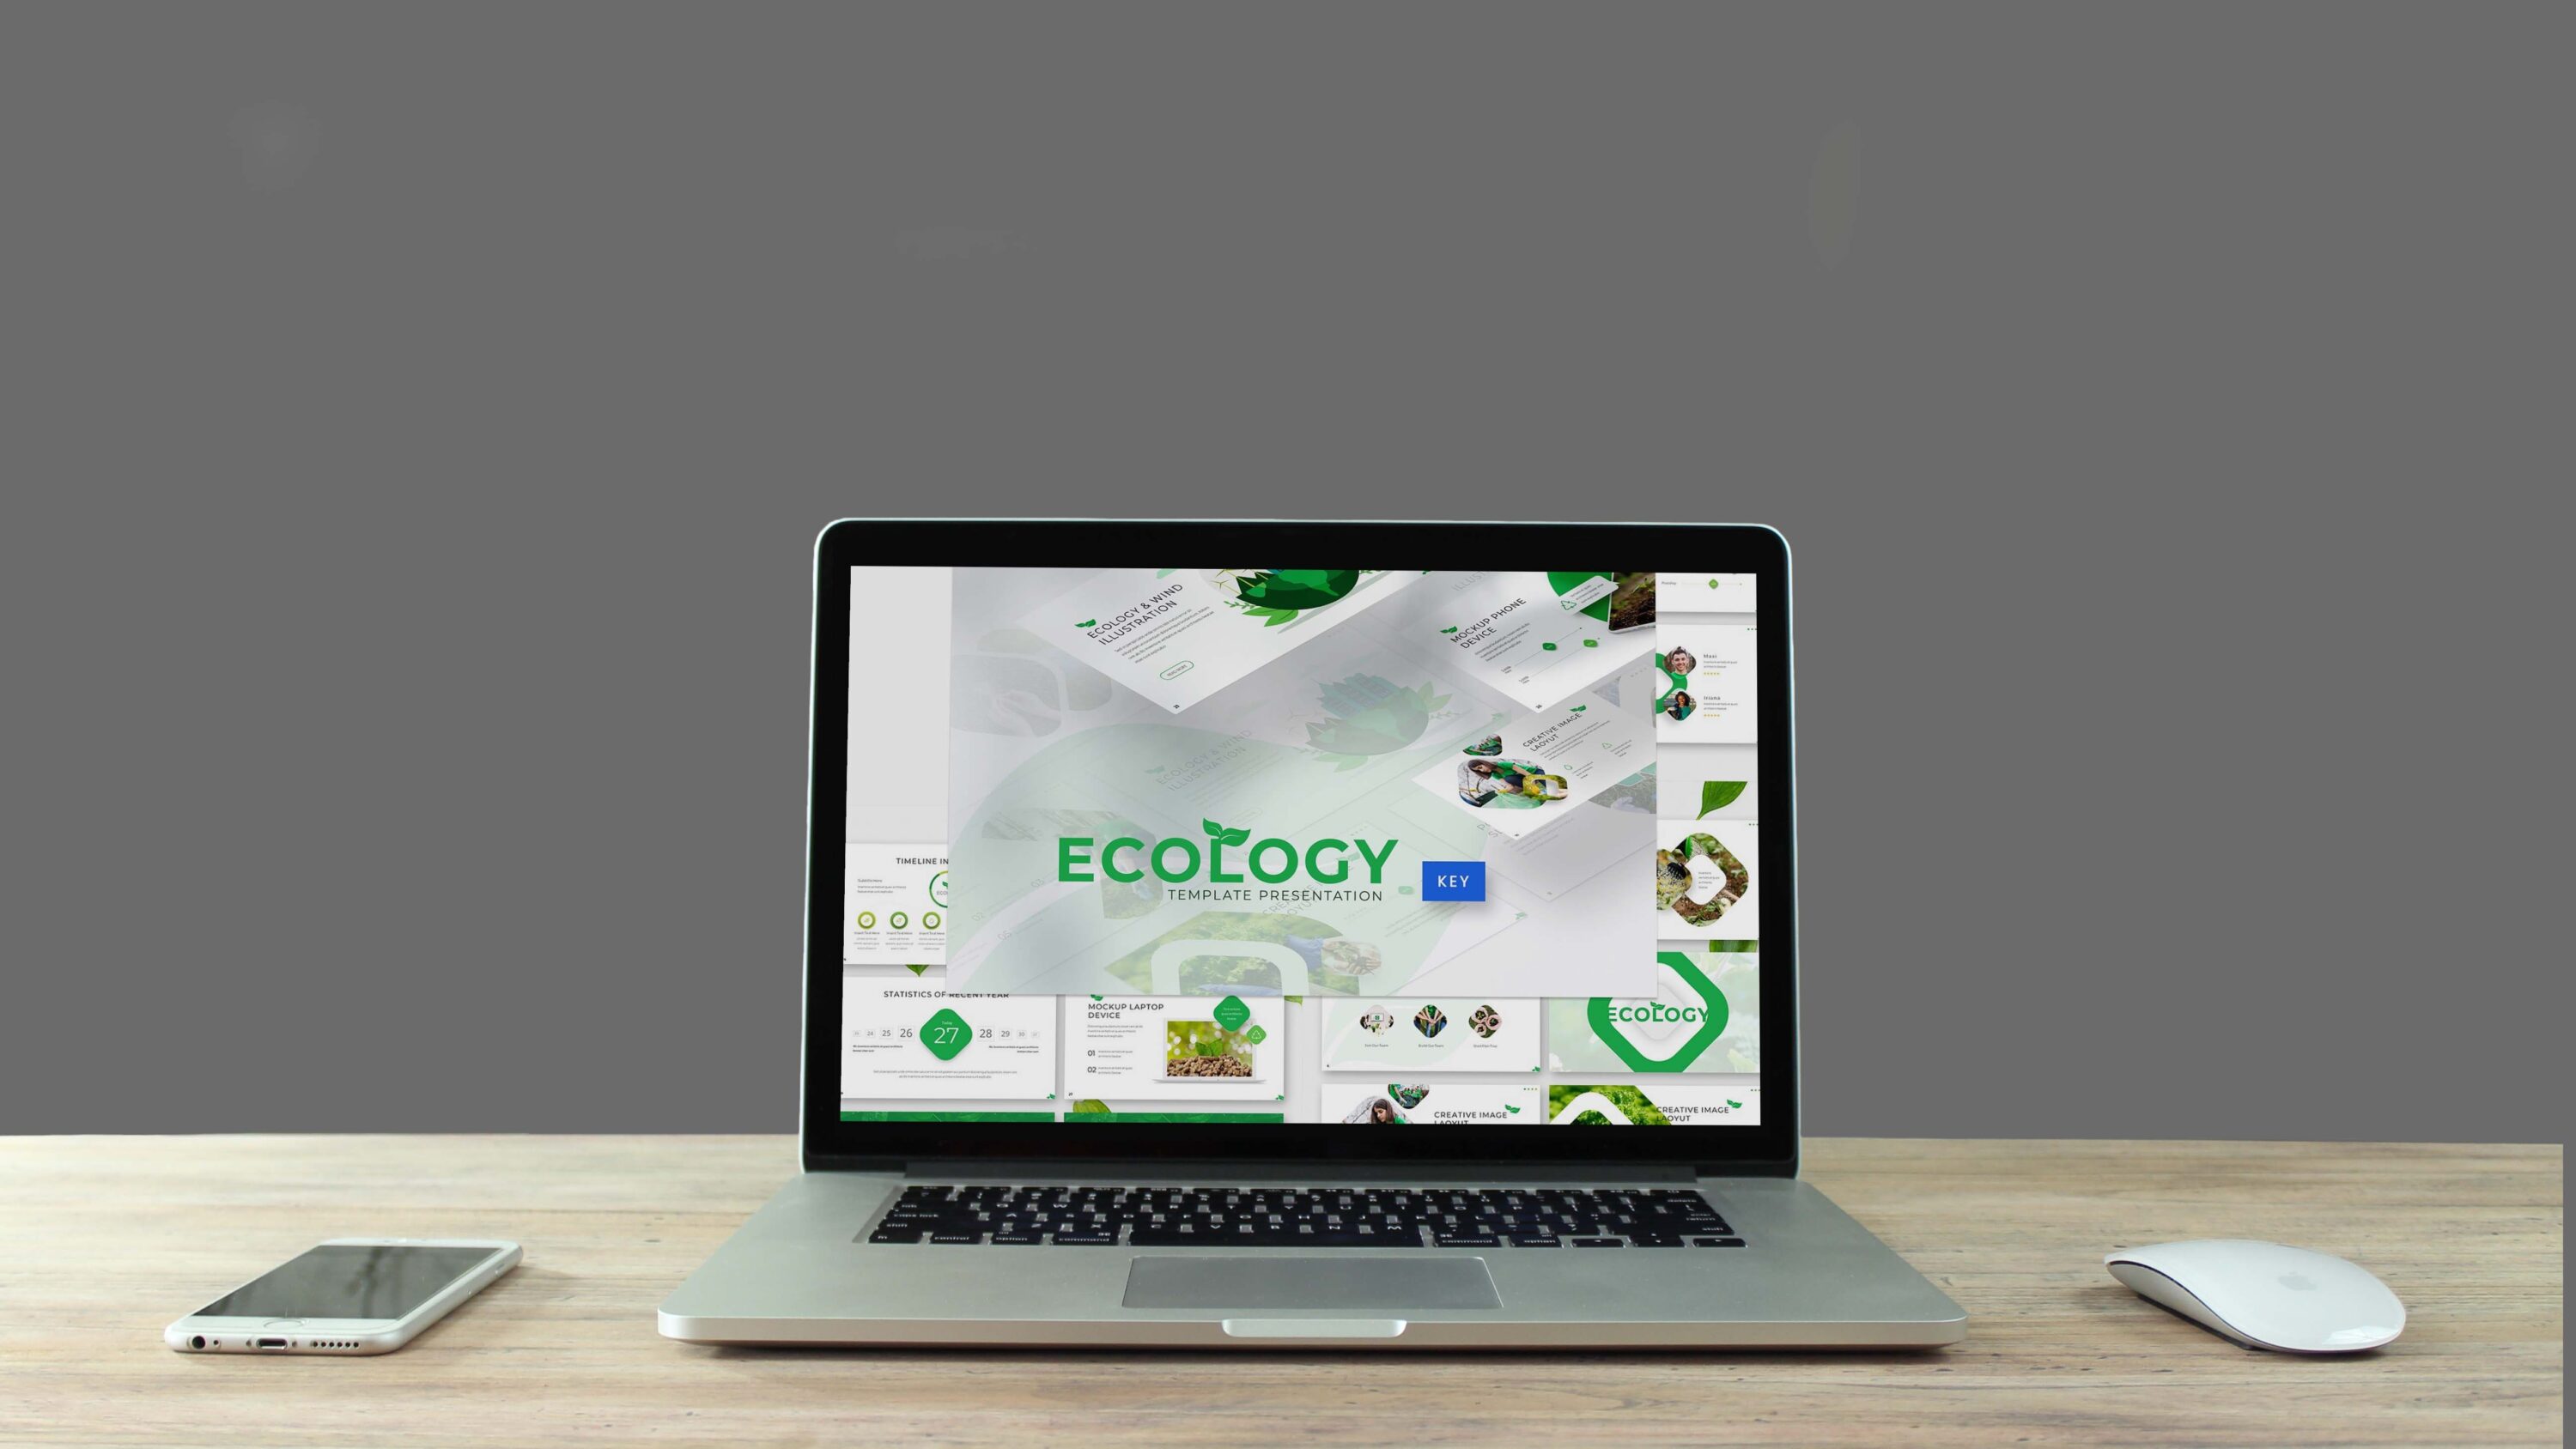 Ecology Keynote Template - Mockup on Laptop.